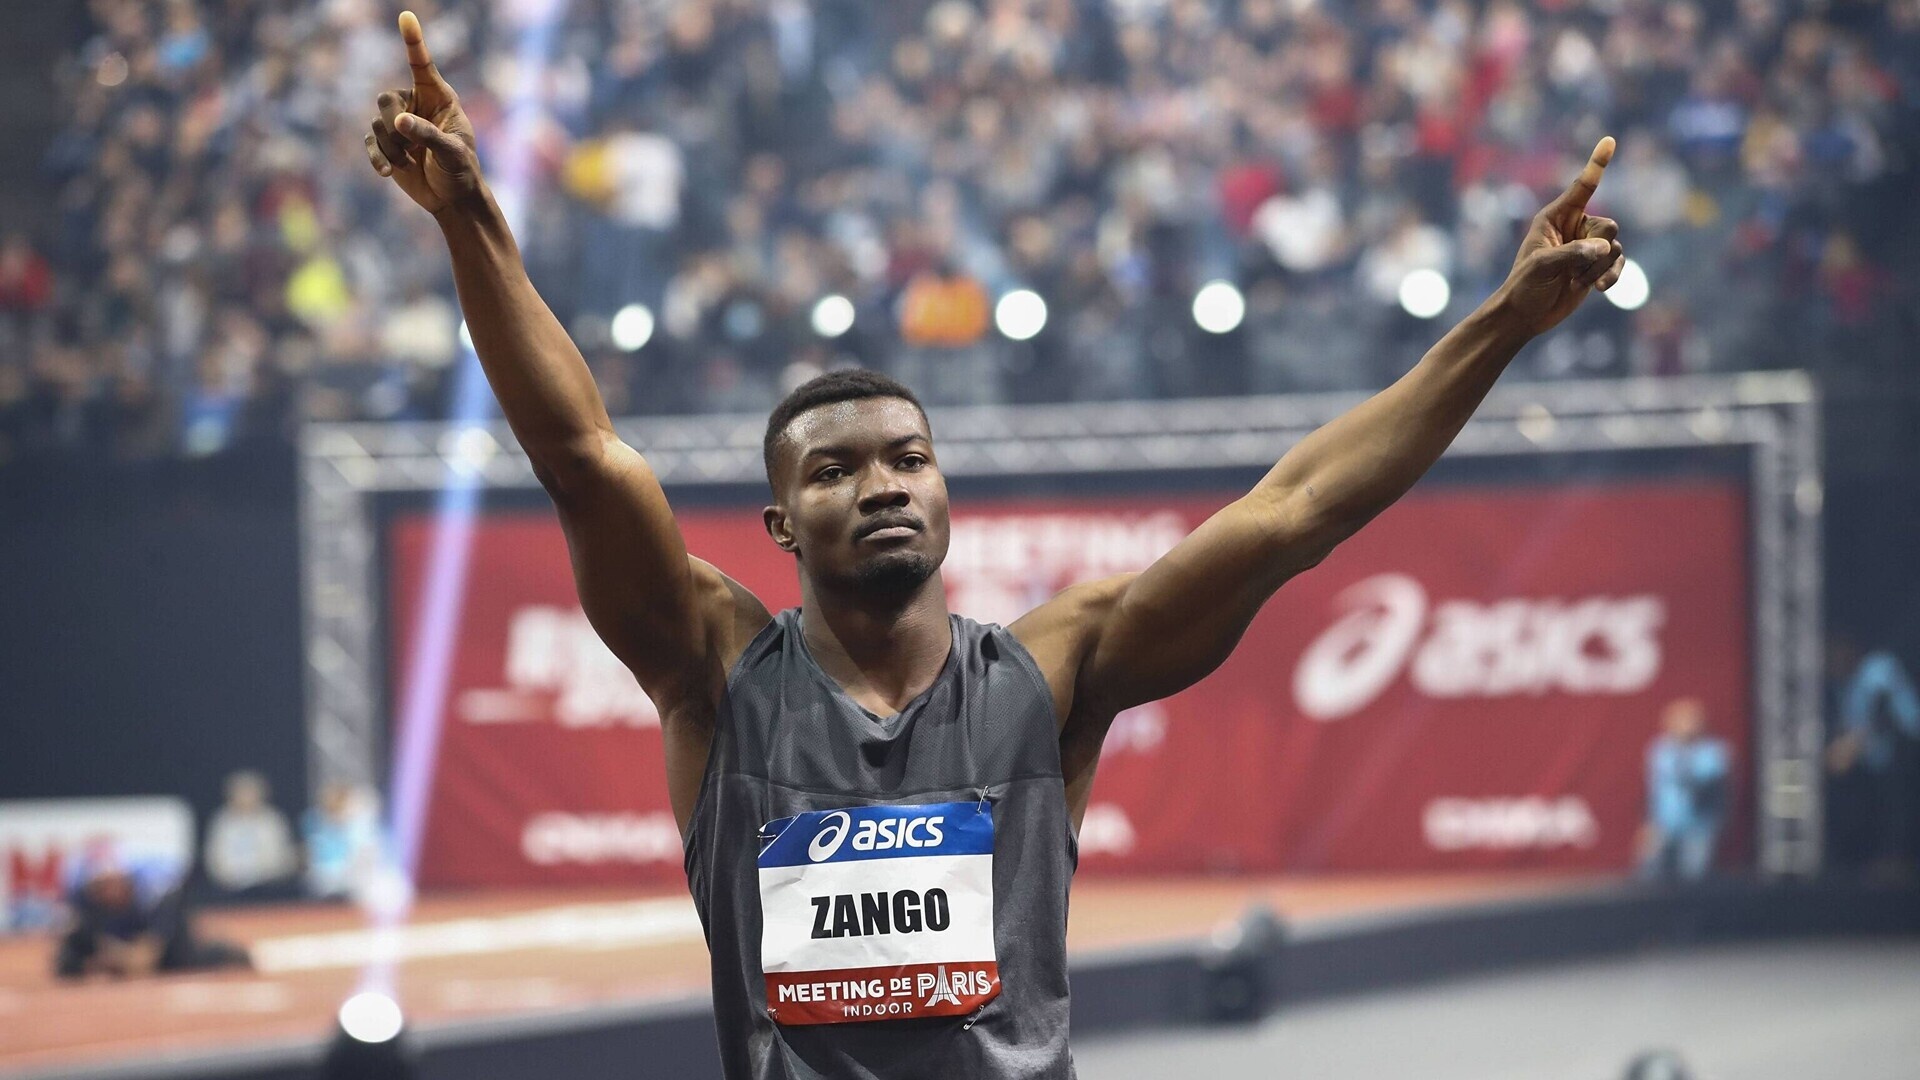 Hugues Fabrice Zango, Burkina Faso, World record, Athletics, 1920x1080 Full HD Desktop